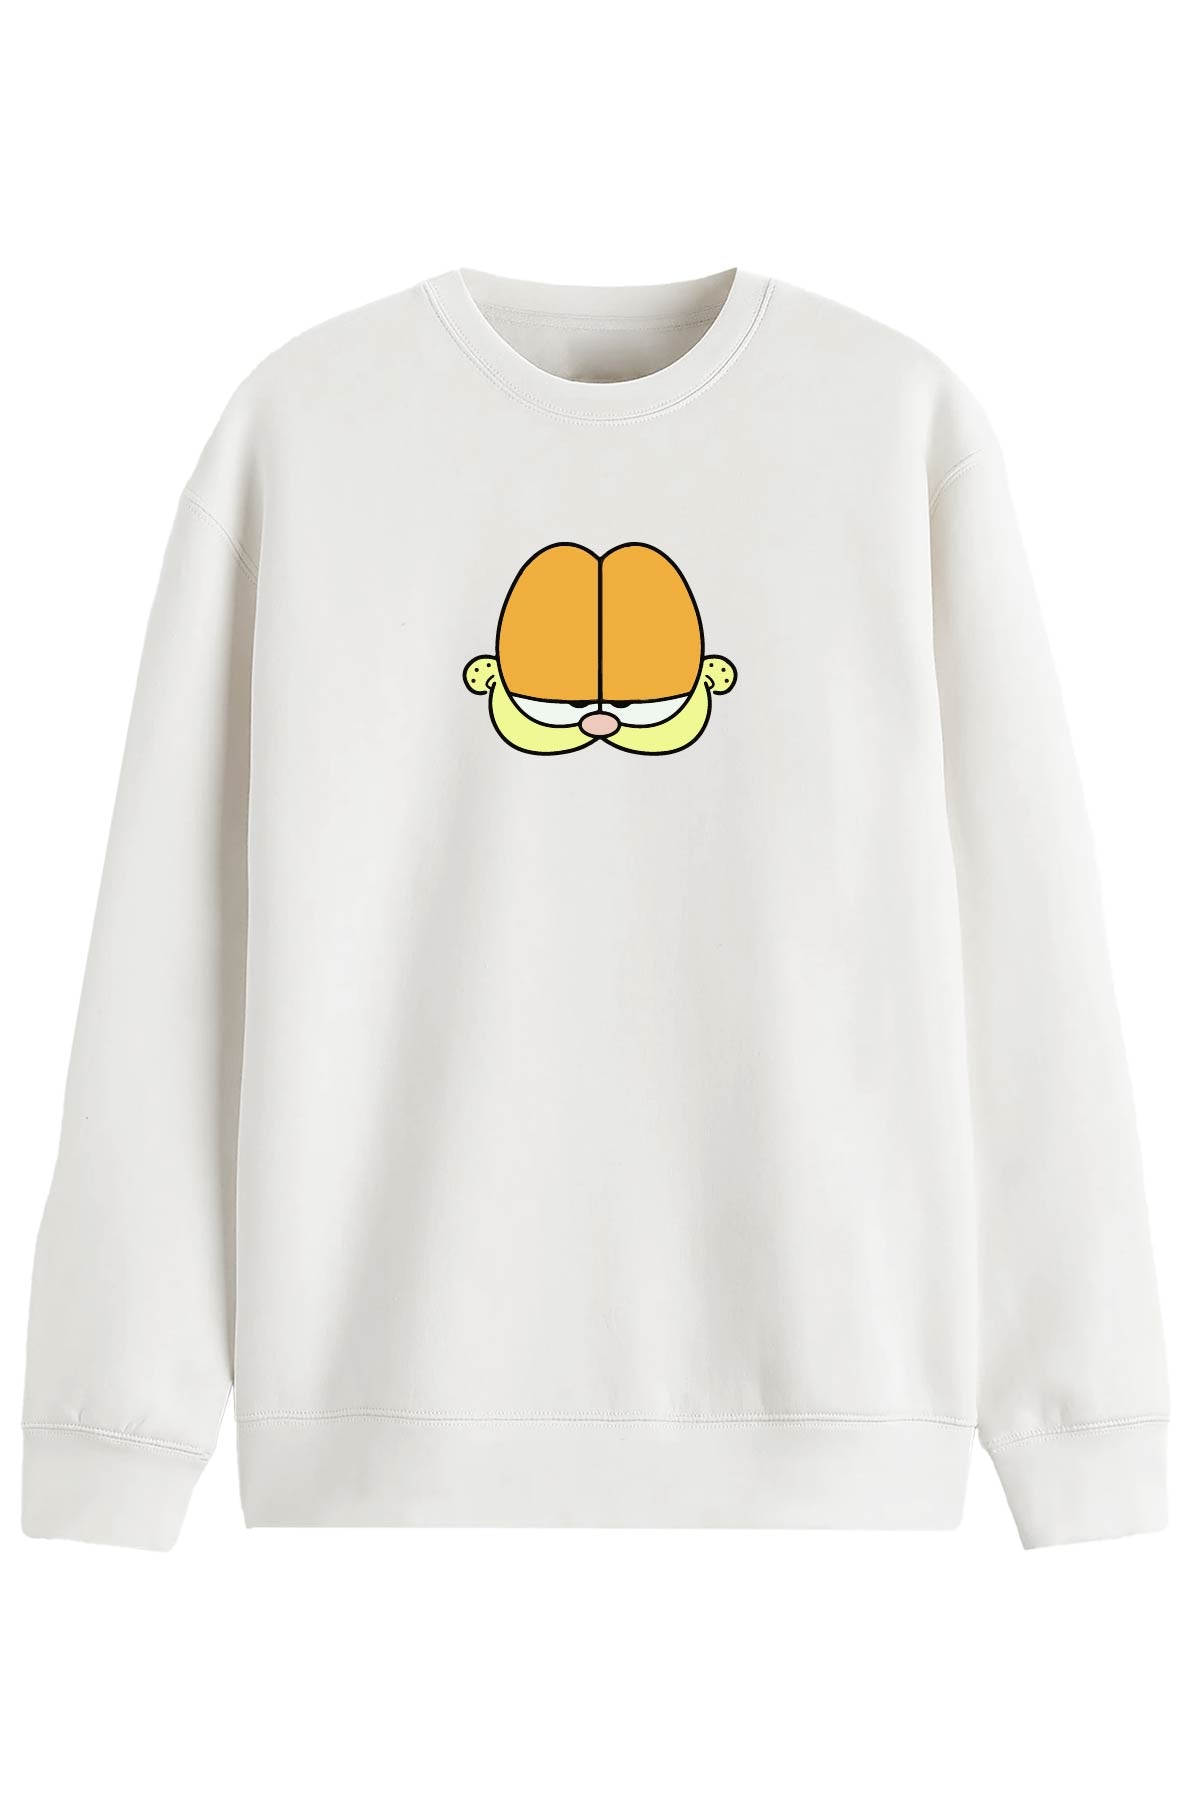 Garfield 2 - Sweatshirt